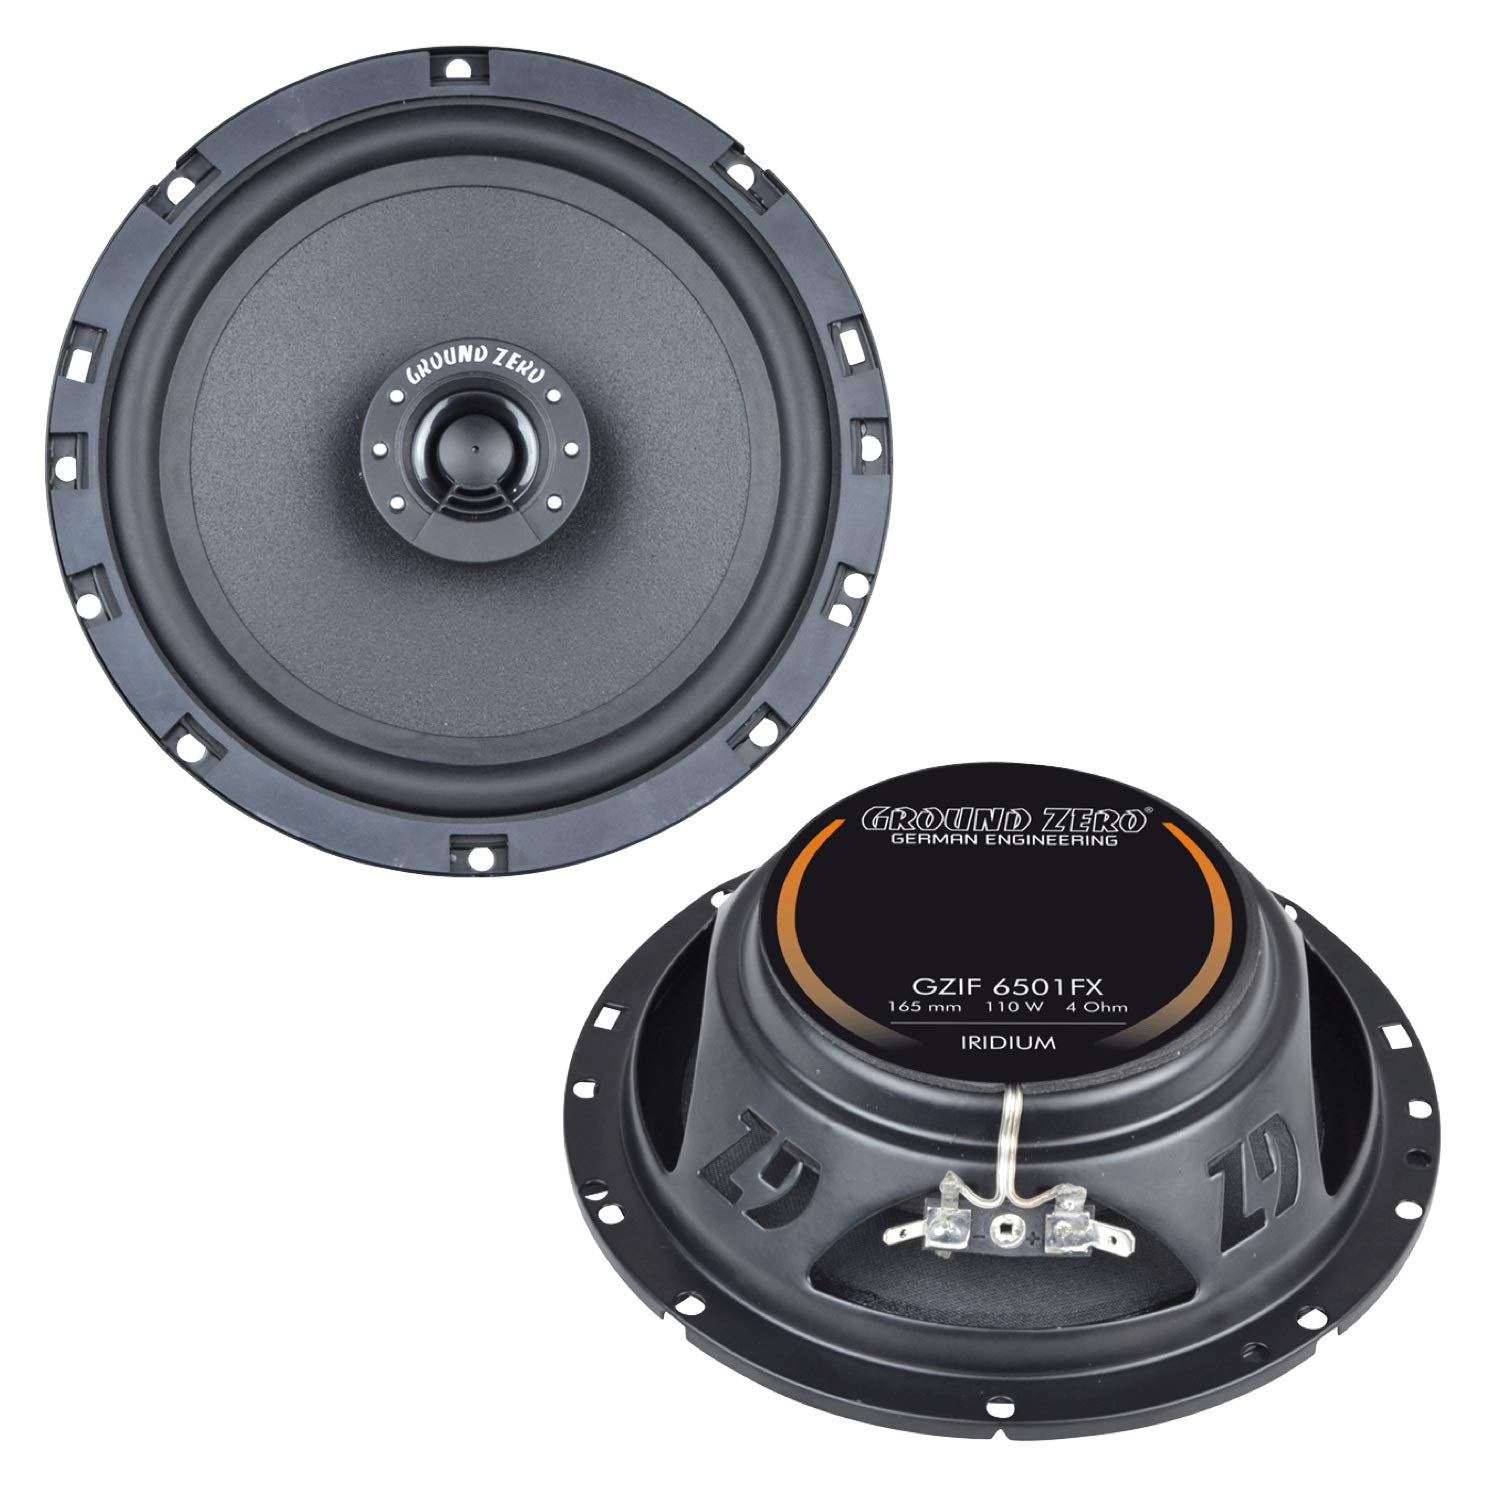 Ground Zero GZIF 6501FX, 2-Wege Koaxial-Lautsprechersystem mit geringer Einbautiefe, 110 Watt max